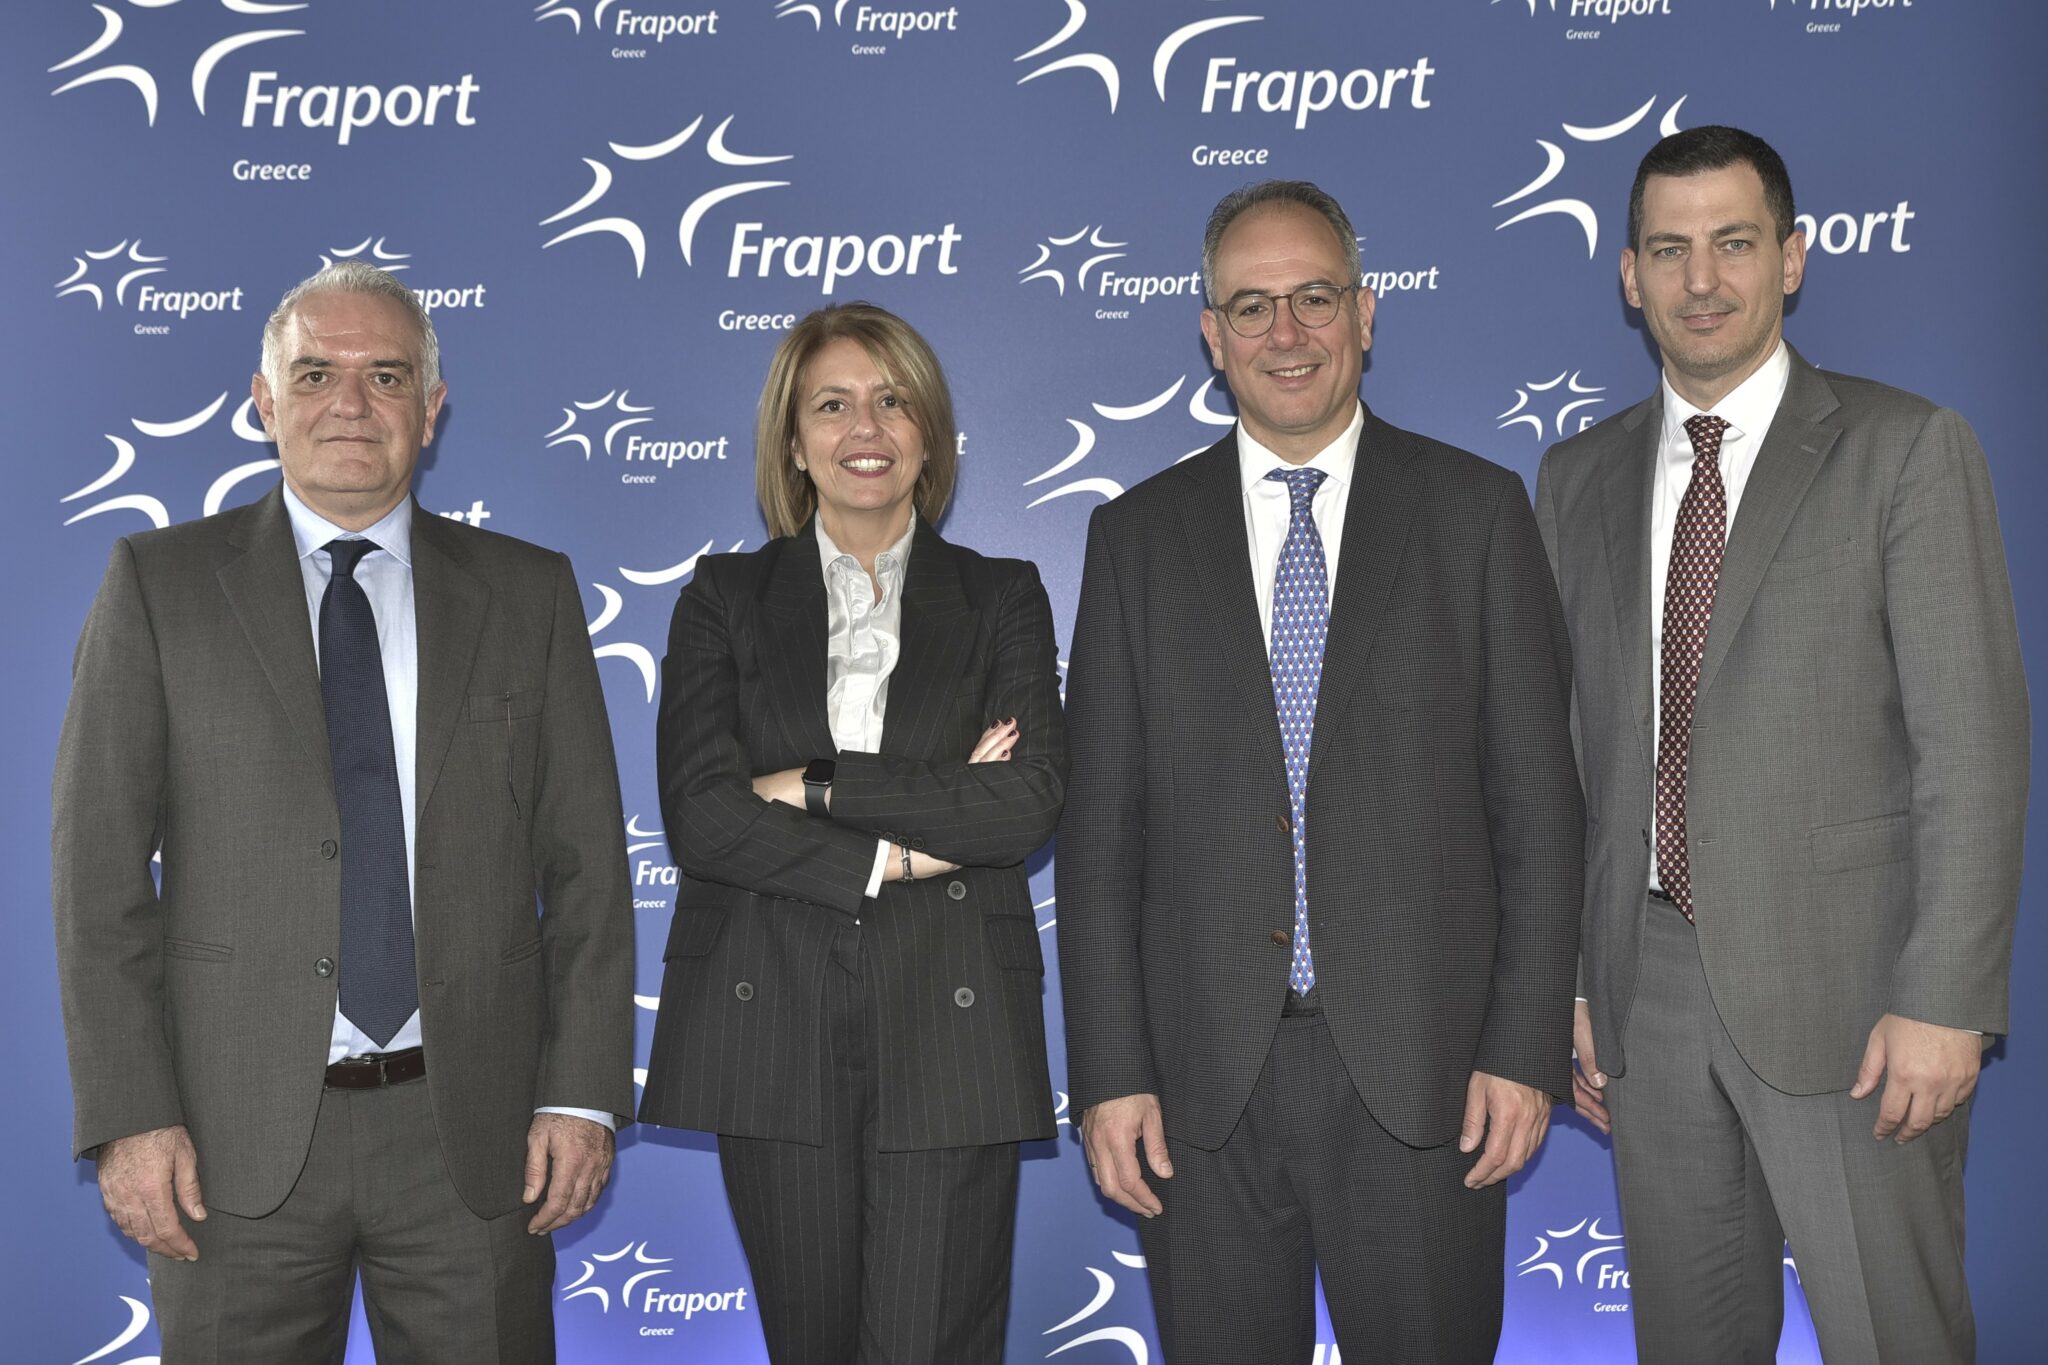 Υψηλές πτήσεις για τη Fraport Greece: Η αύξηση του τουρισμού ενισχύει τις επιδόσεις των αεροδρομίων
